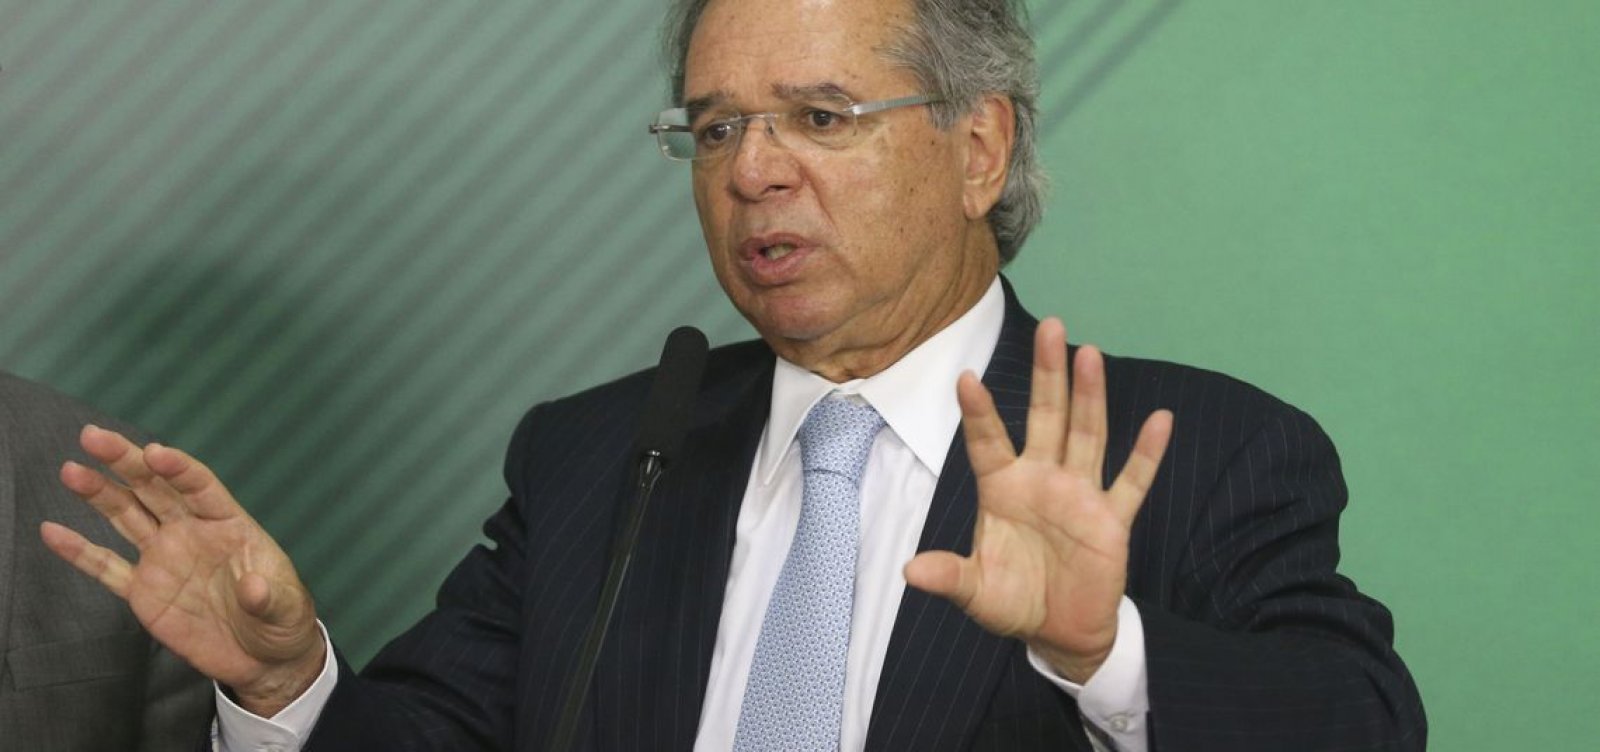 'Inexperiência' e 'pequenos desajustes' impediram votação da Previdência, diz Guedes